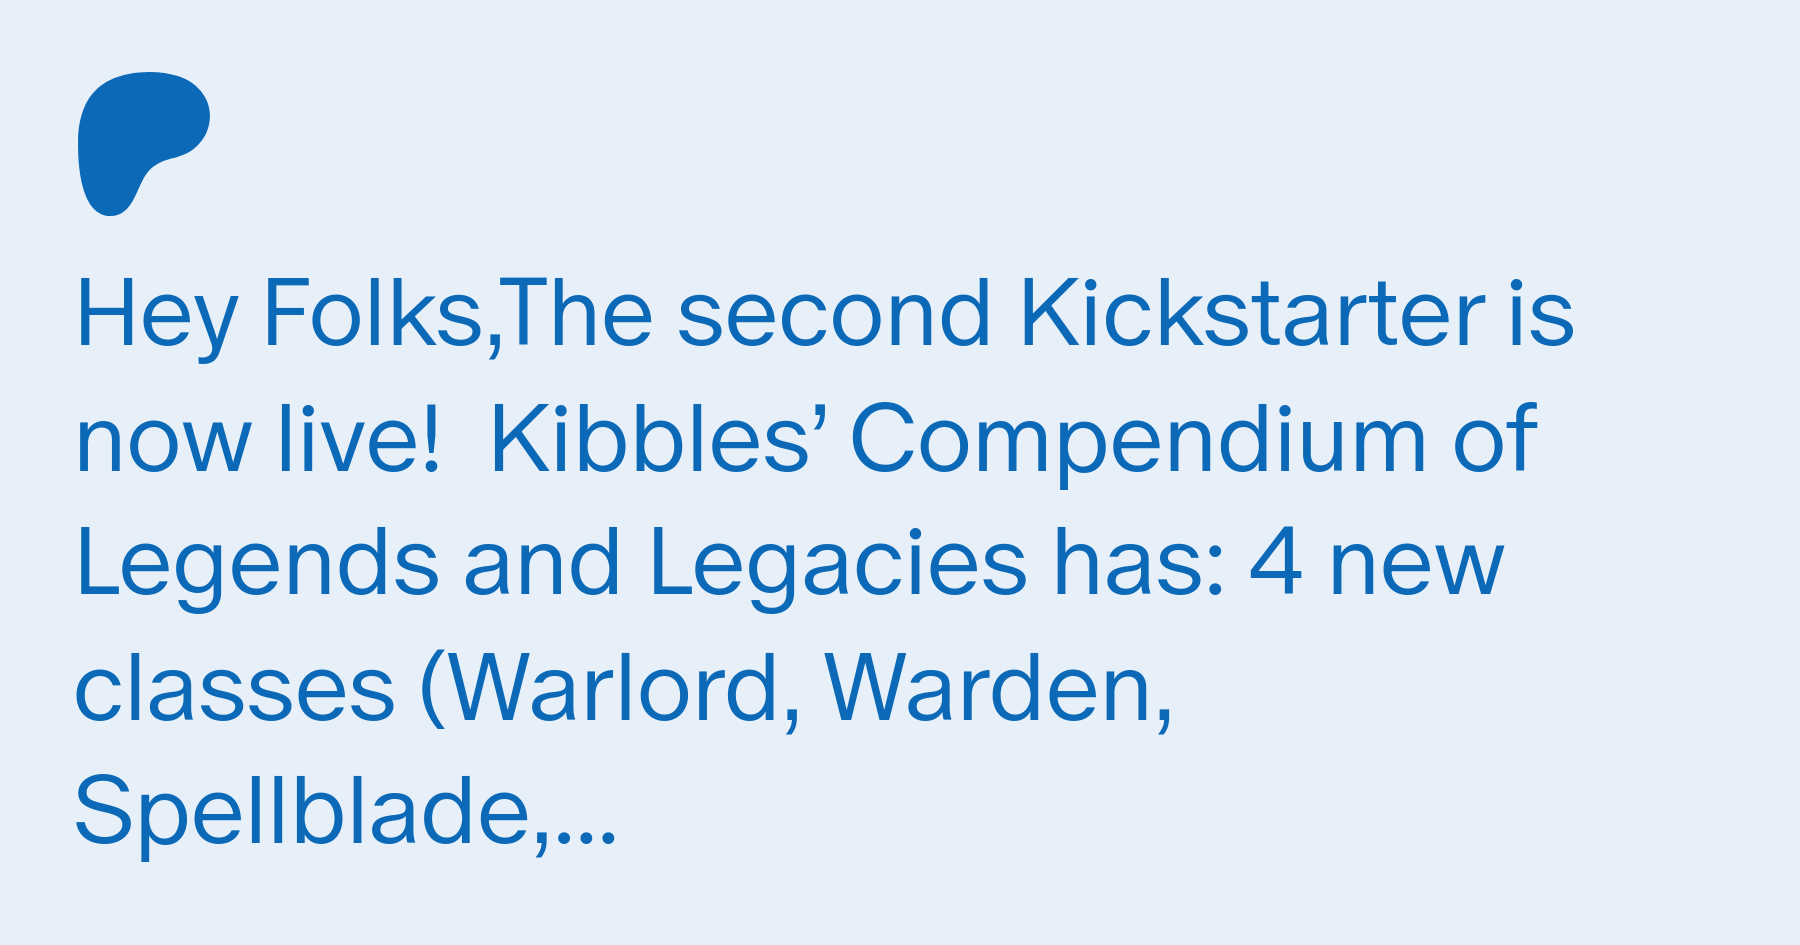 Kickstarter 2 - Kibbles' Compendium of Legends and Legacies - is LIVE!